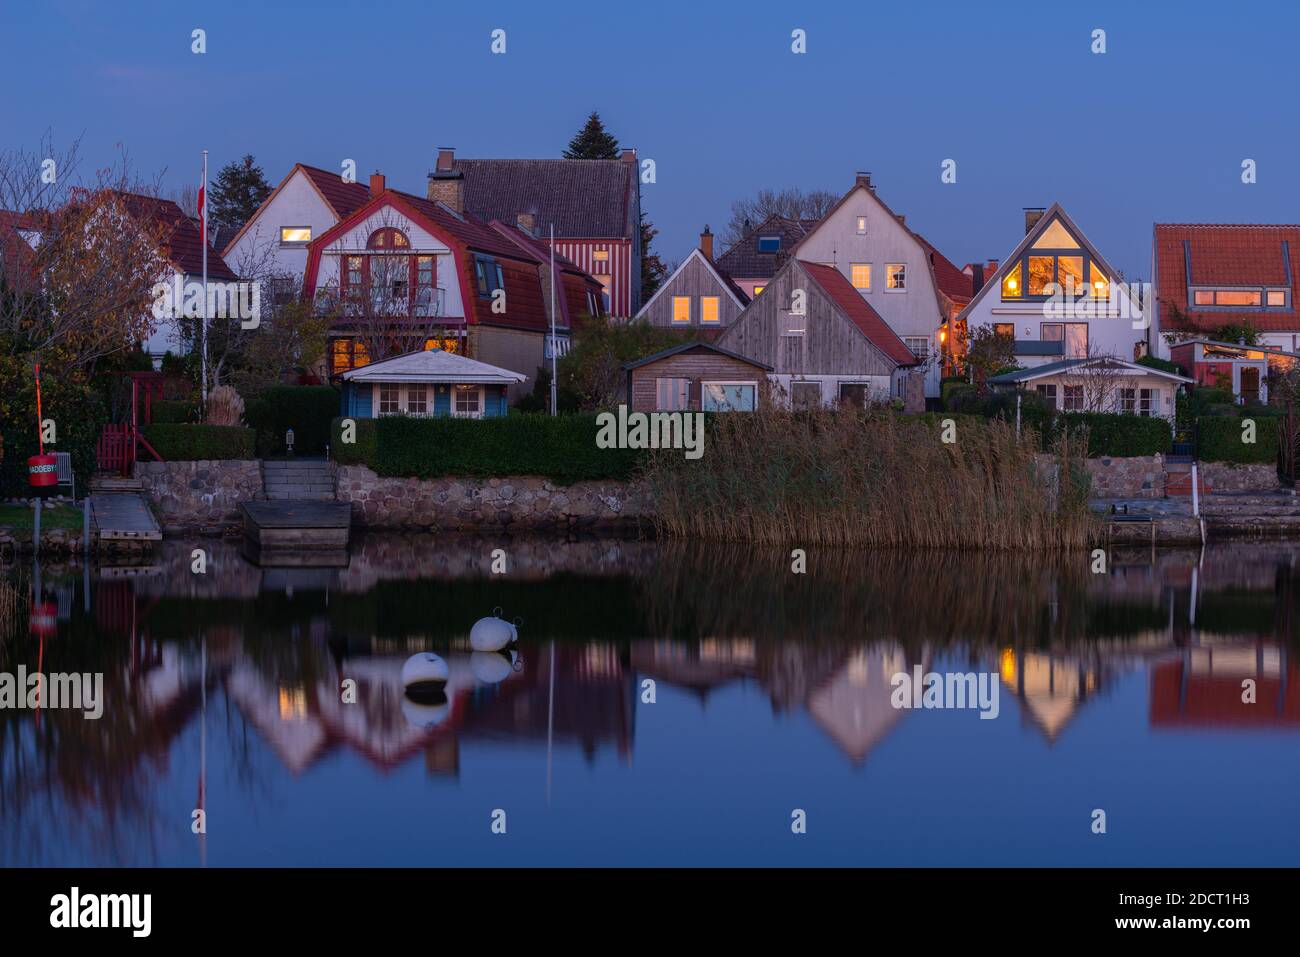 Le Holm, quartier traditionnel des pêcheurs, ville du Schleswig, région de Schlei, Mer Baltique, Schleswig-Holstein, Allemagne du Nord, Europe centrale Banque D'Images